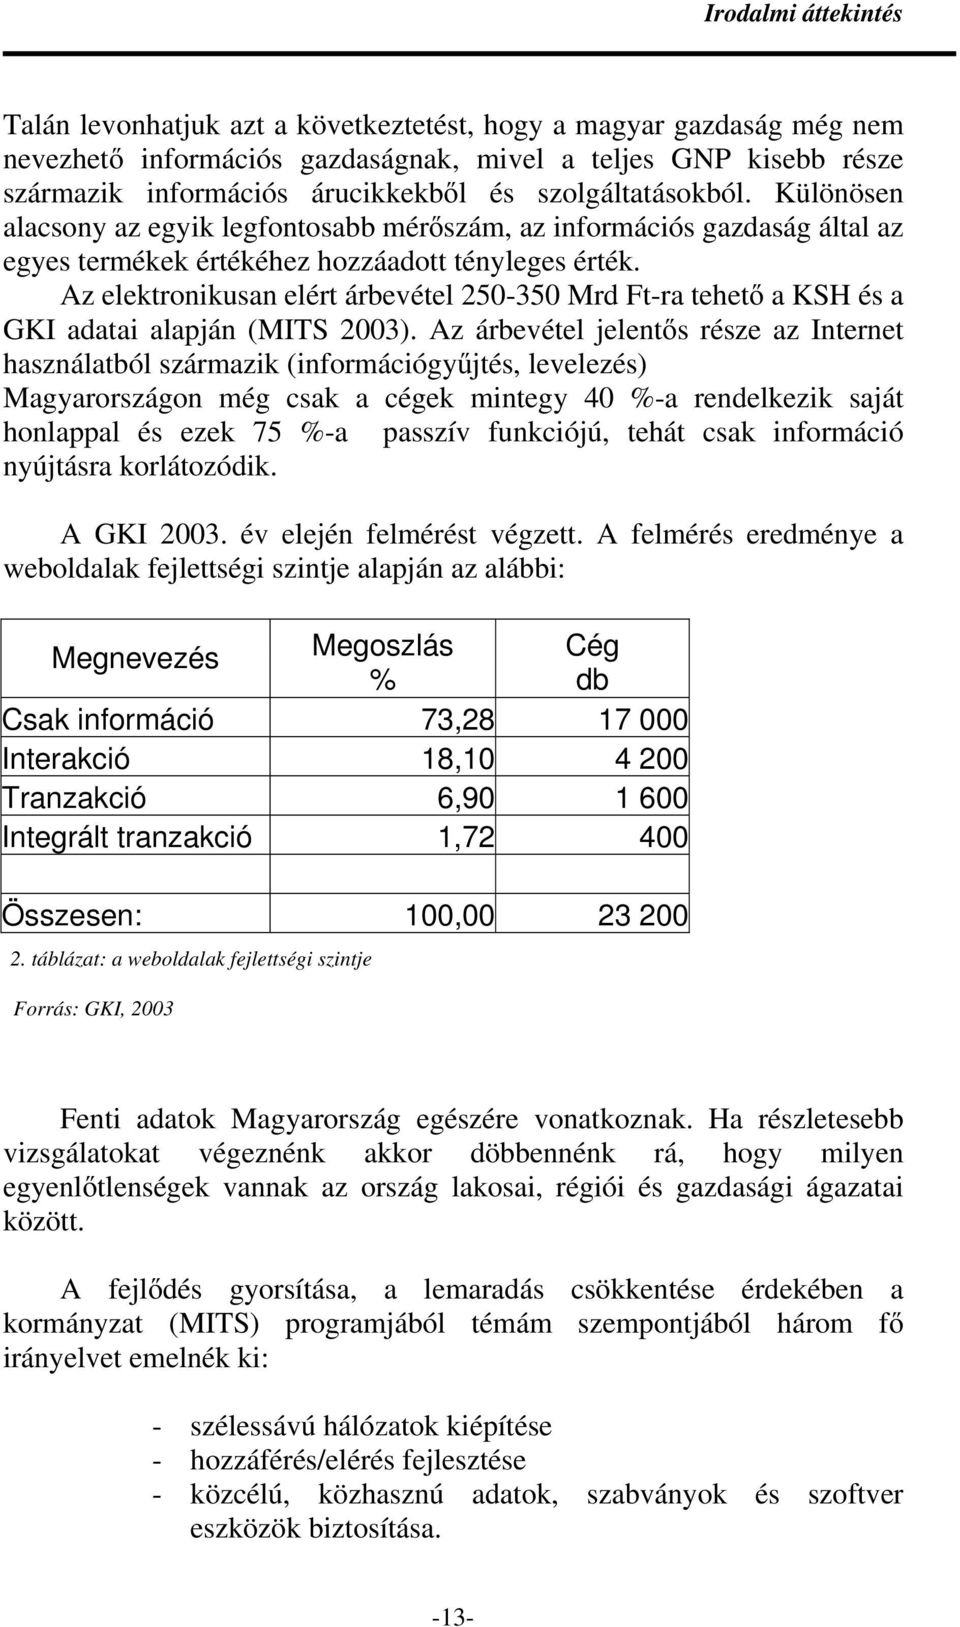 Az elektronikusan elért árbevétel 250-350 Mrd Ft-ra tehetı a KSH és a GKI adatai alapján (MITS 2003).